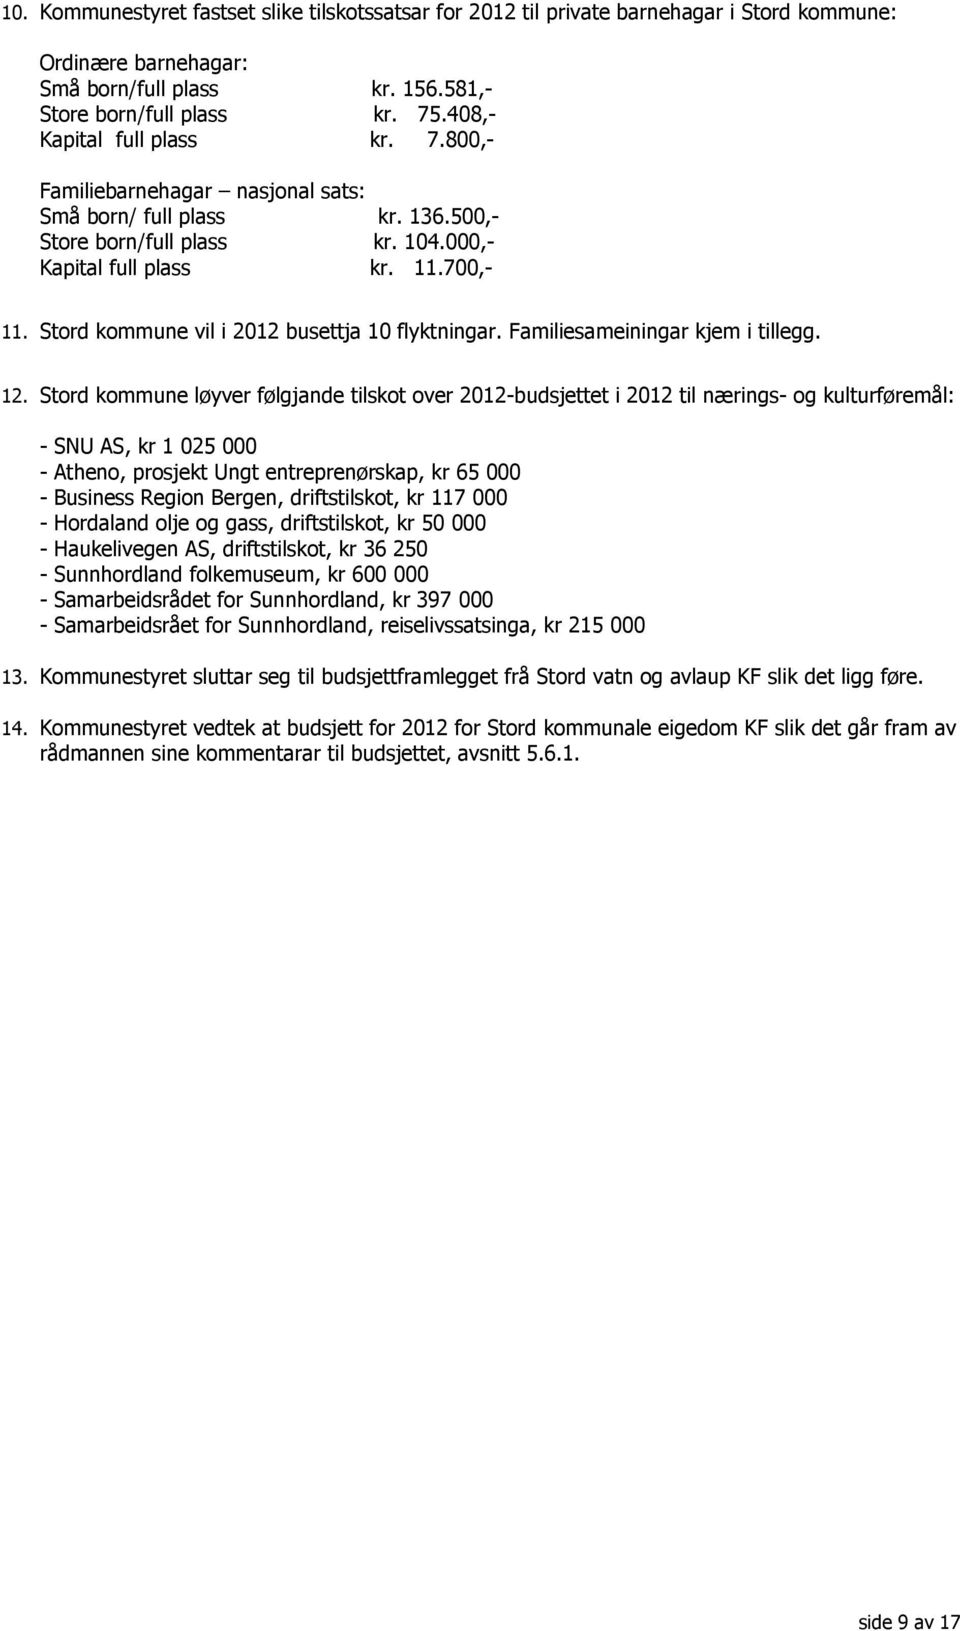 Stord kommune vil i 2012 busettja 10 flyktningar. Familiesameiningar kjem i tillegg. 12.